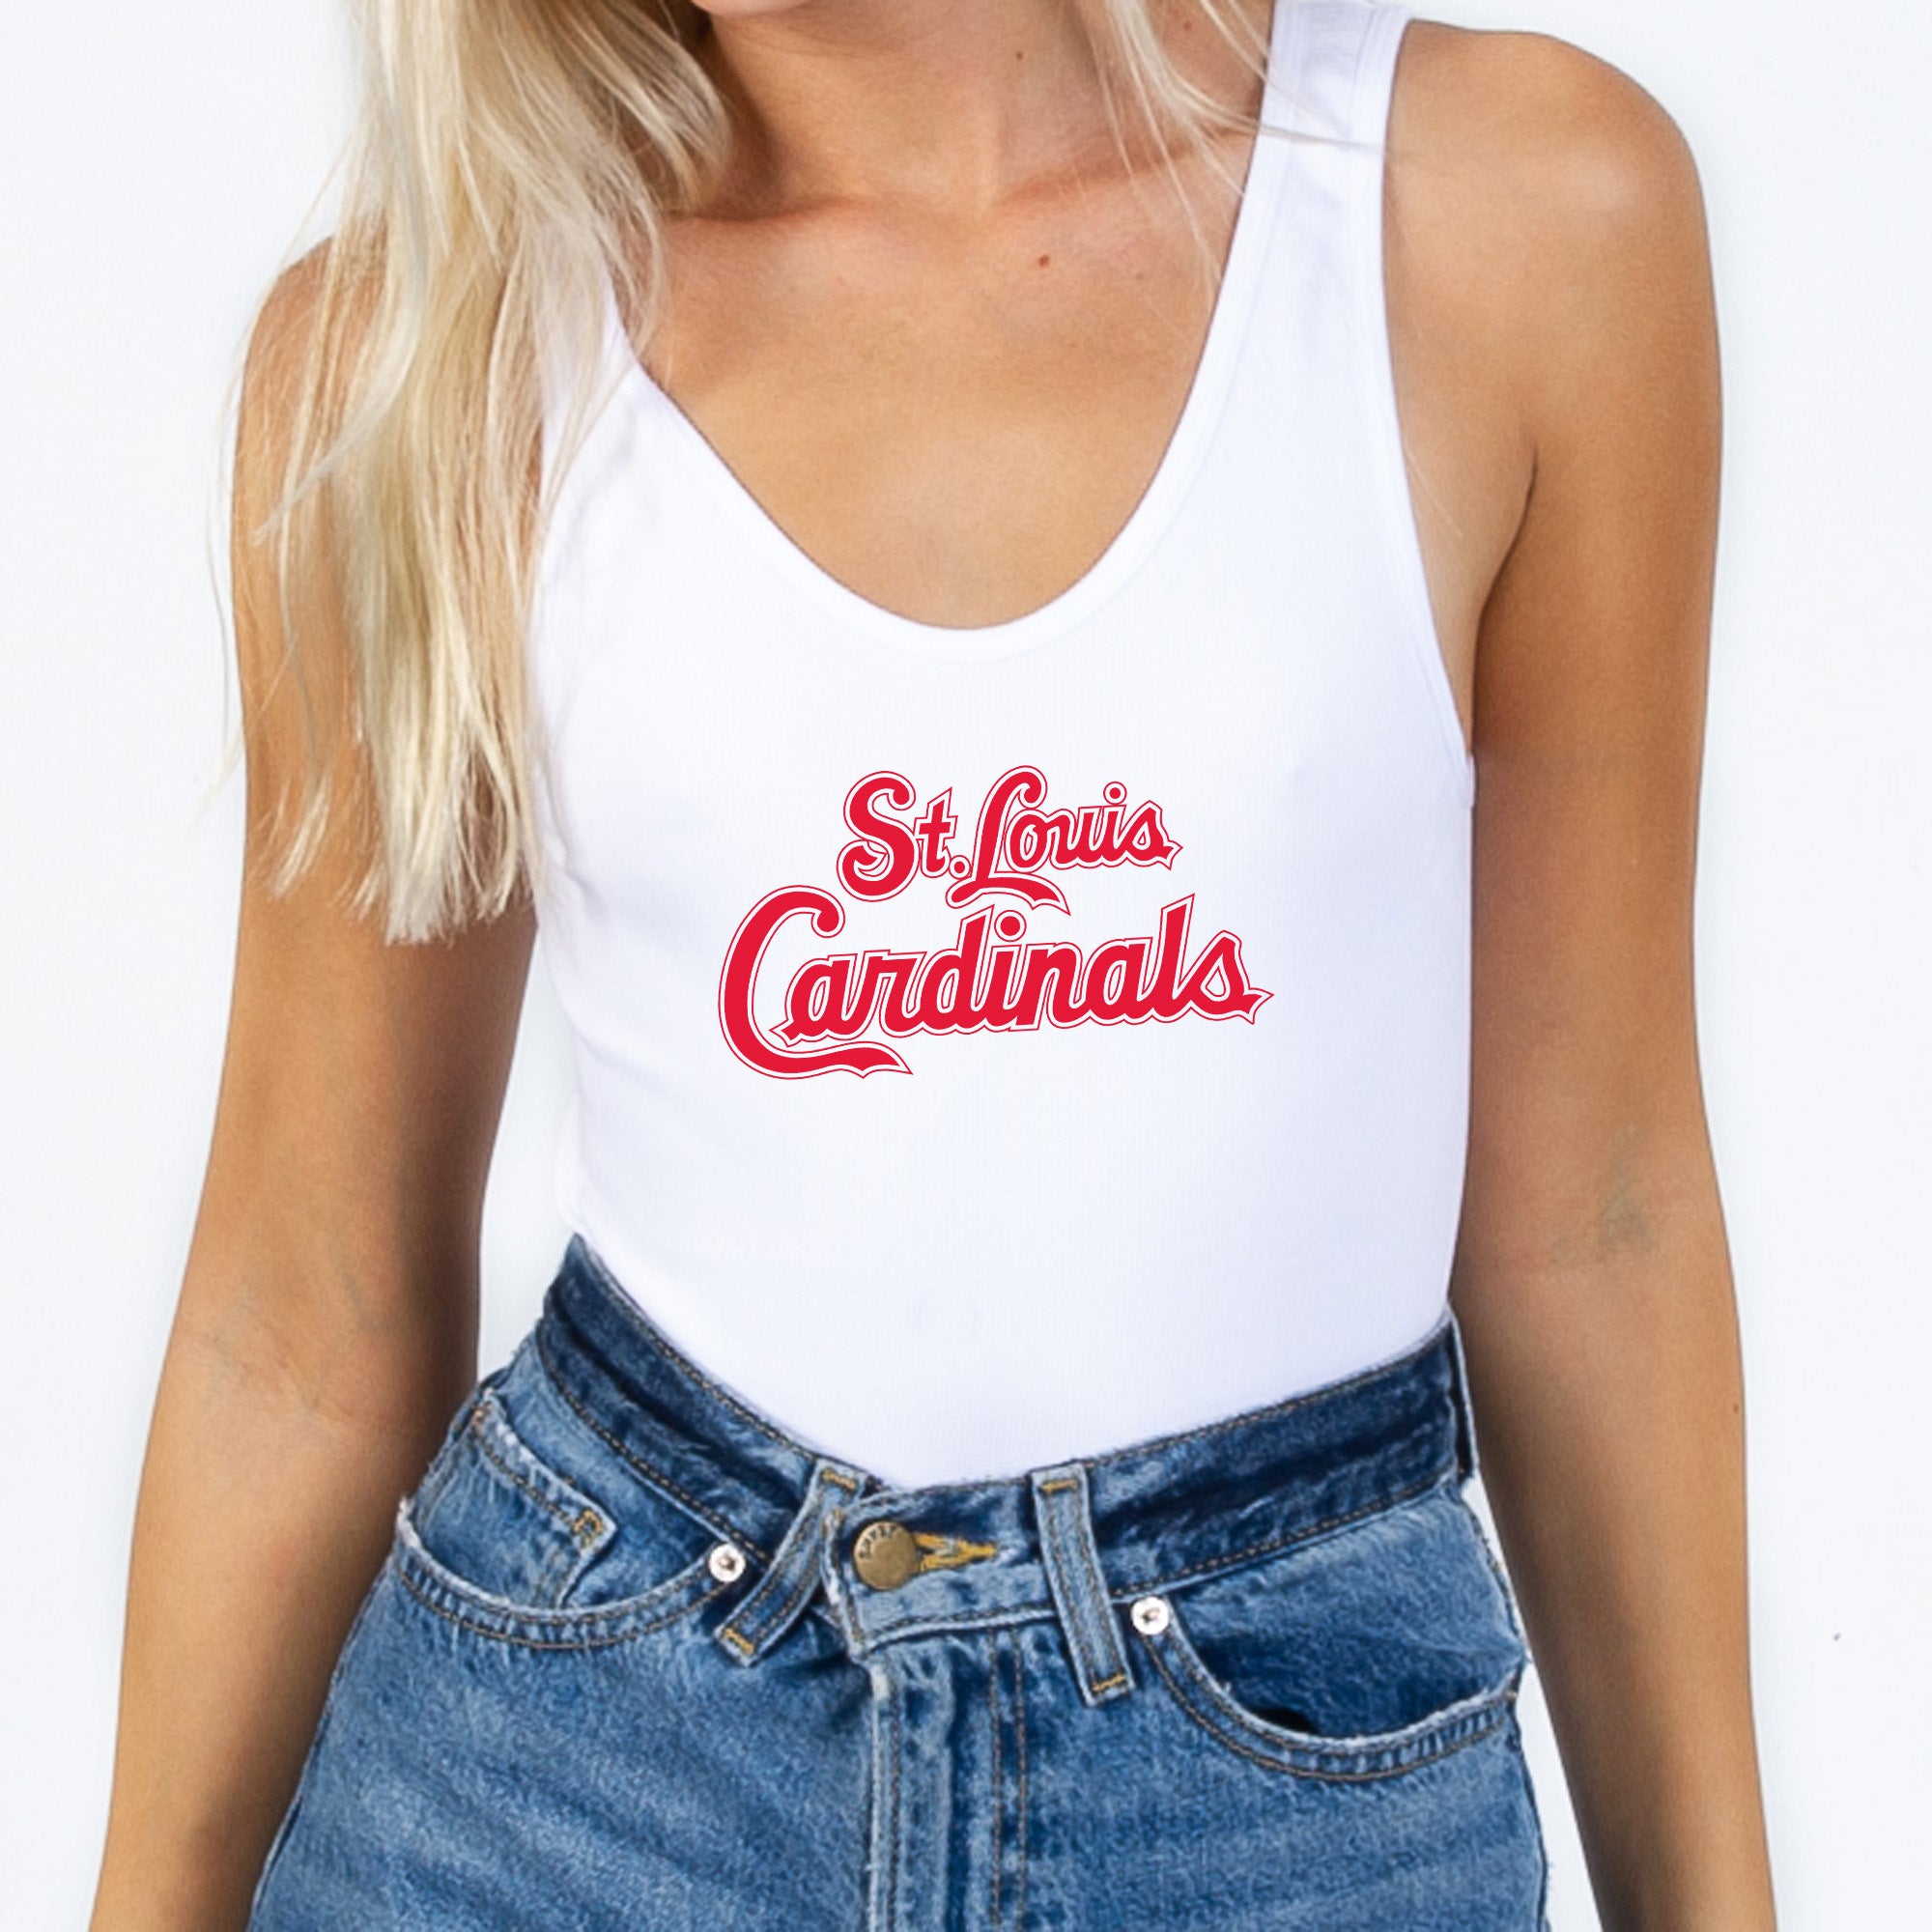 St. Louis Cardinals Women's Apparel, Women's MLB Apparel